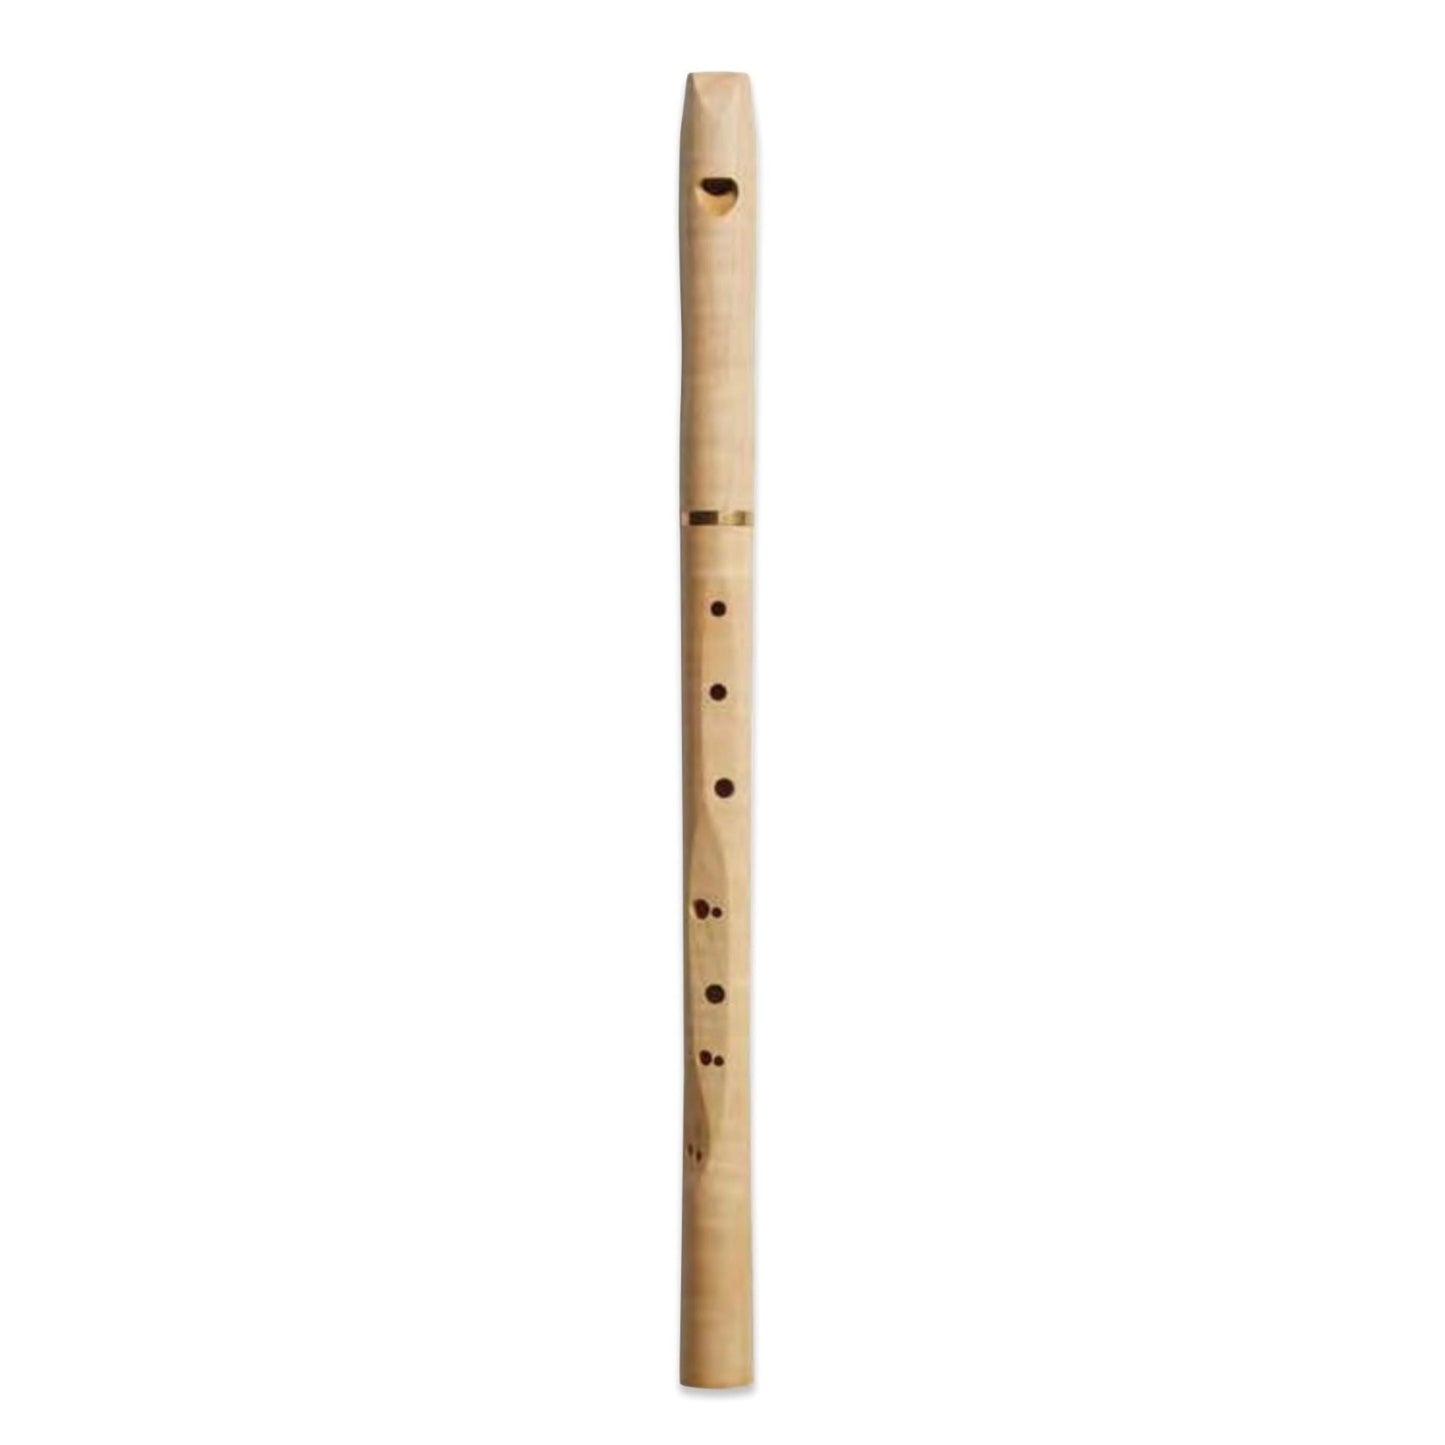 Choroi Alto F-Flute in Maple Wood, 440 Hz Music - Alder & Alouette